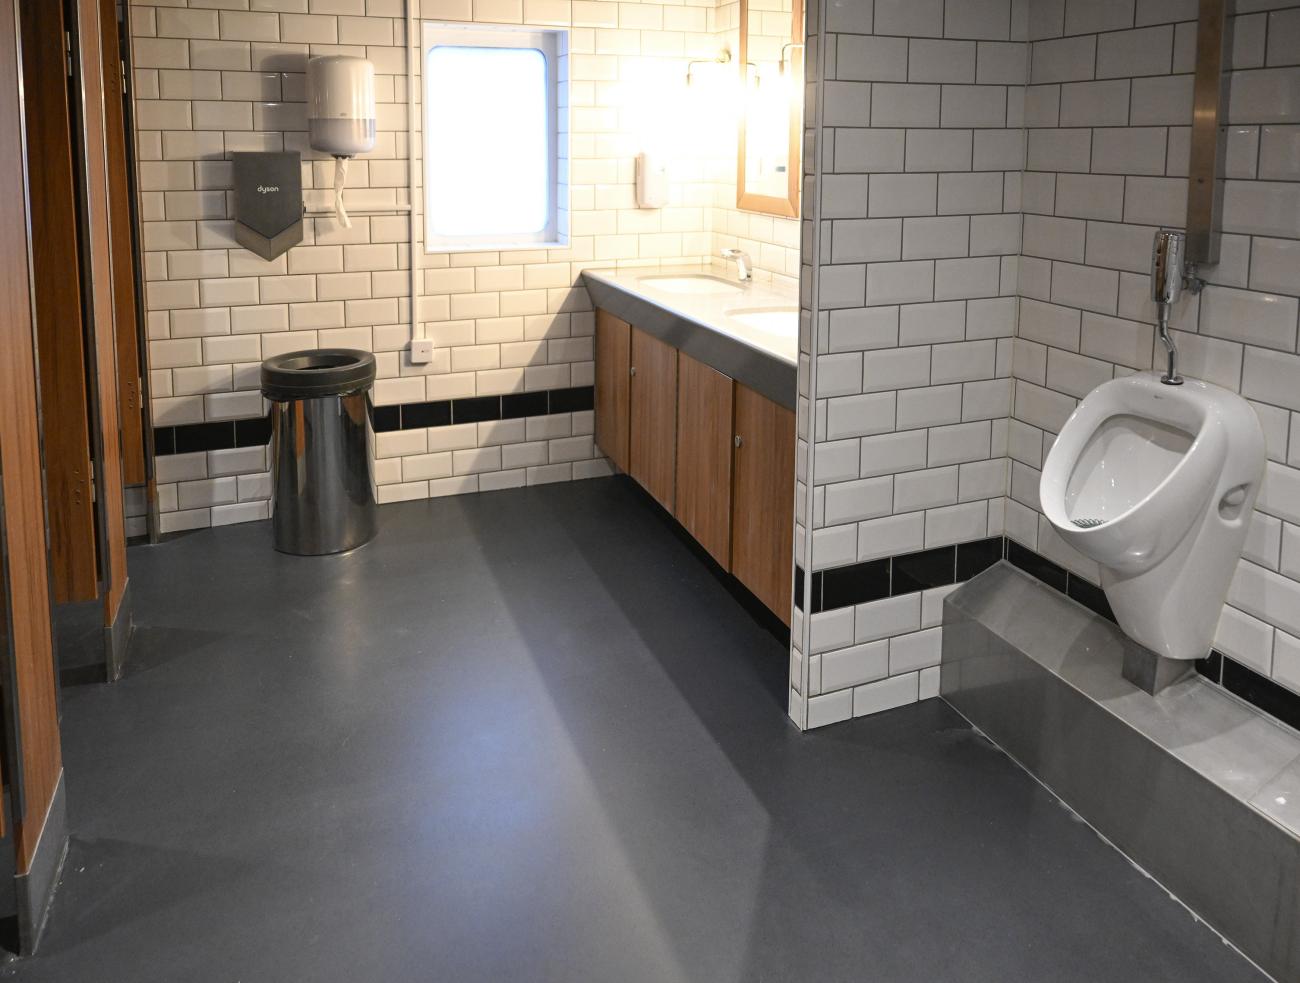 Fartyget offentliga toaletter har fräschats upp, bland annat med nya golv.